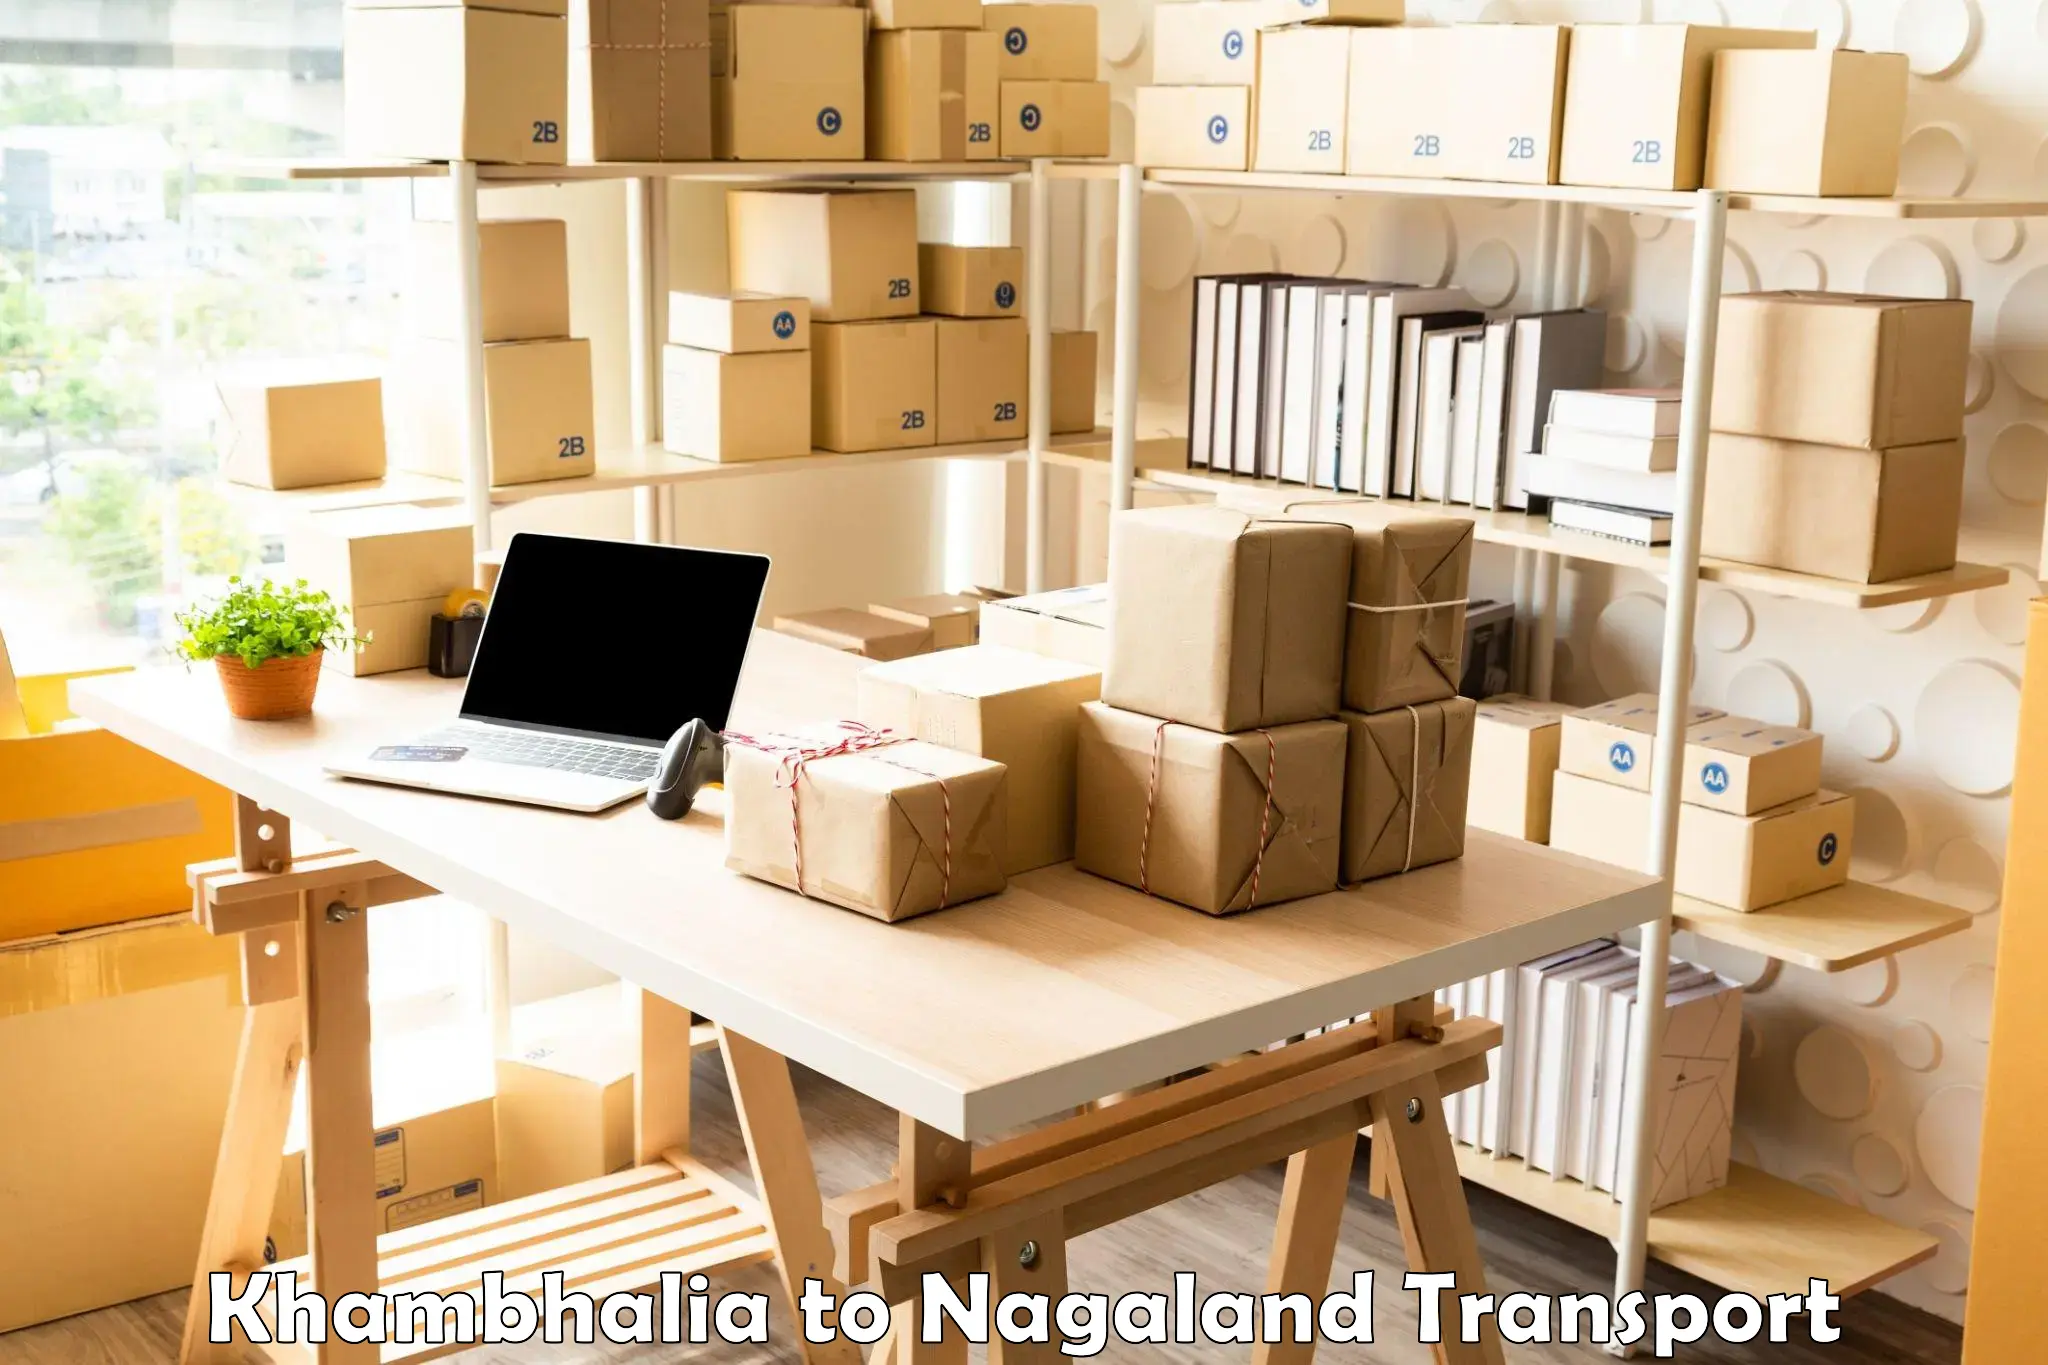 Container transport service Khambhalia to NIT Nagaland